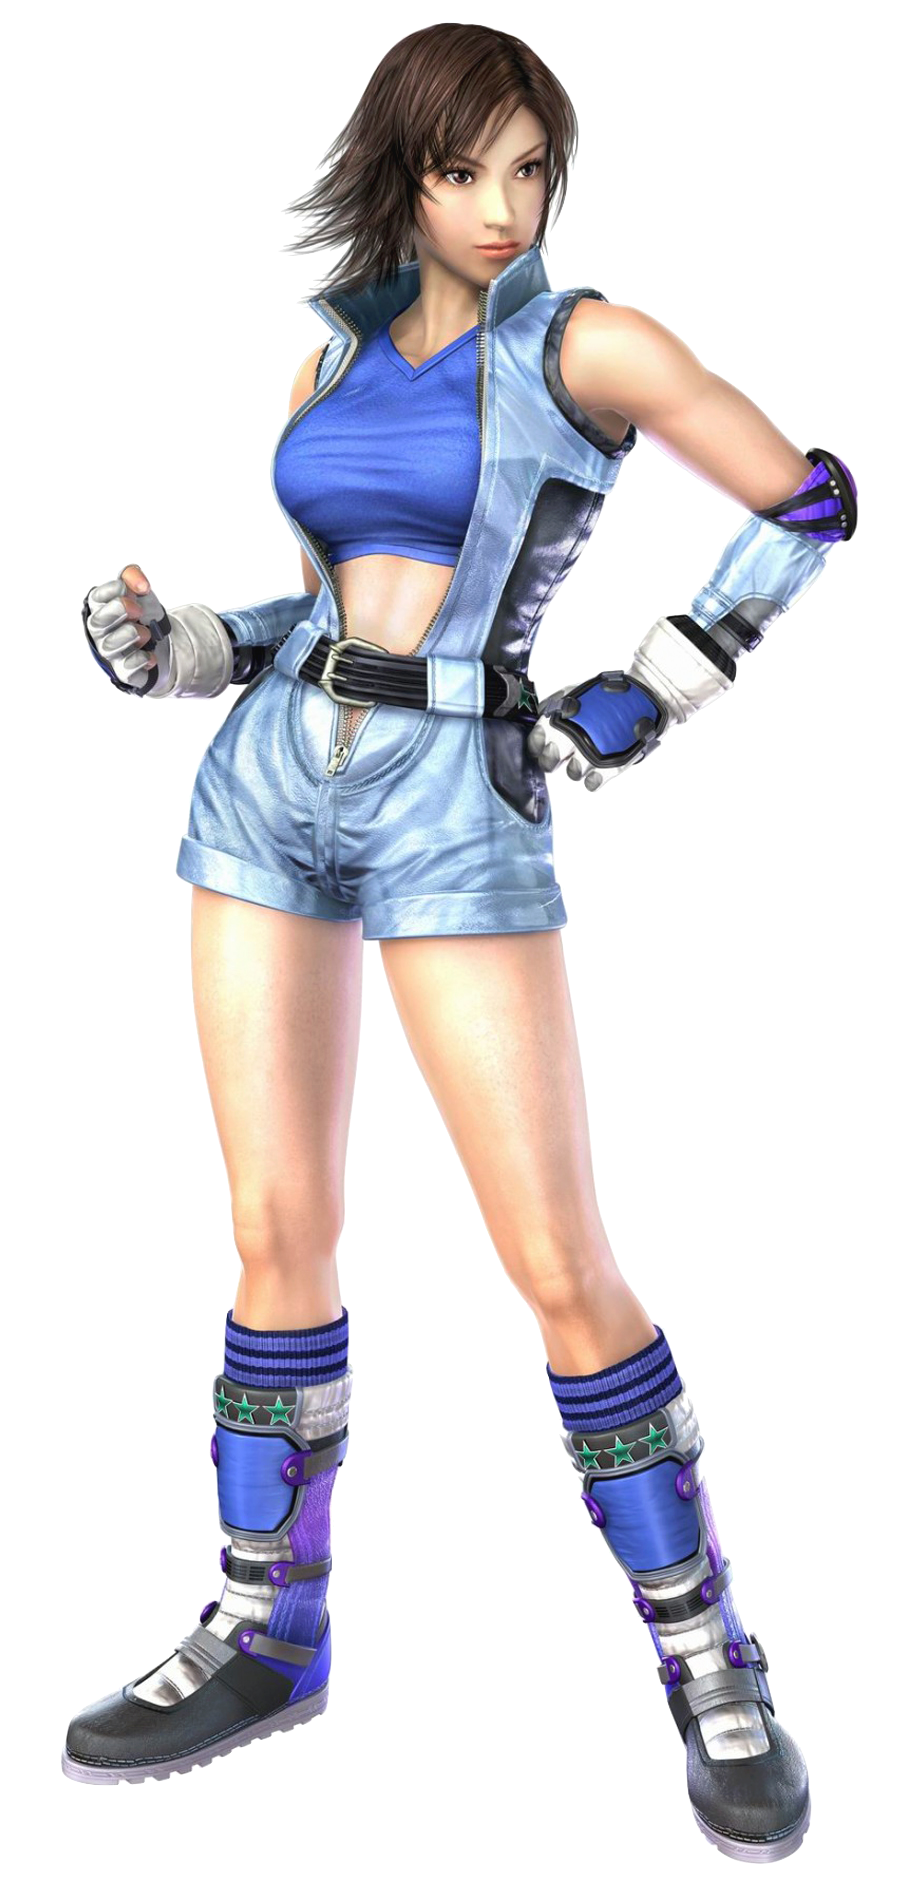 Asuka Kazama (2) - Origin: Tekken 5